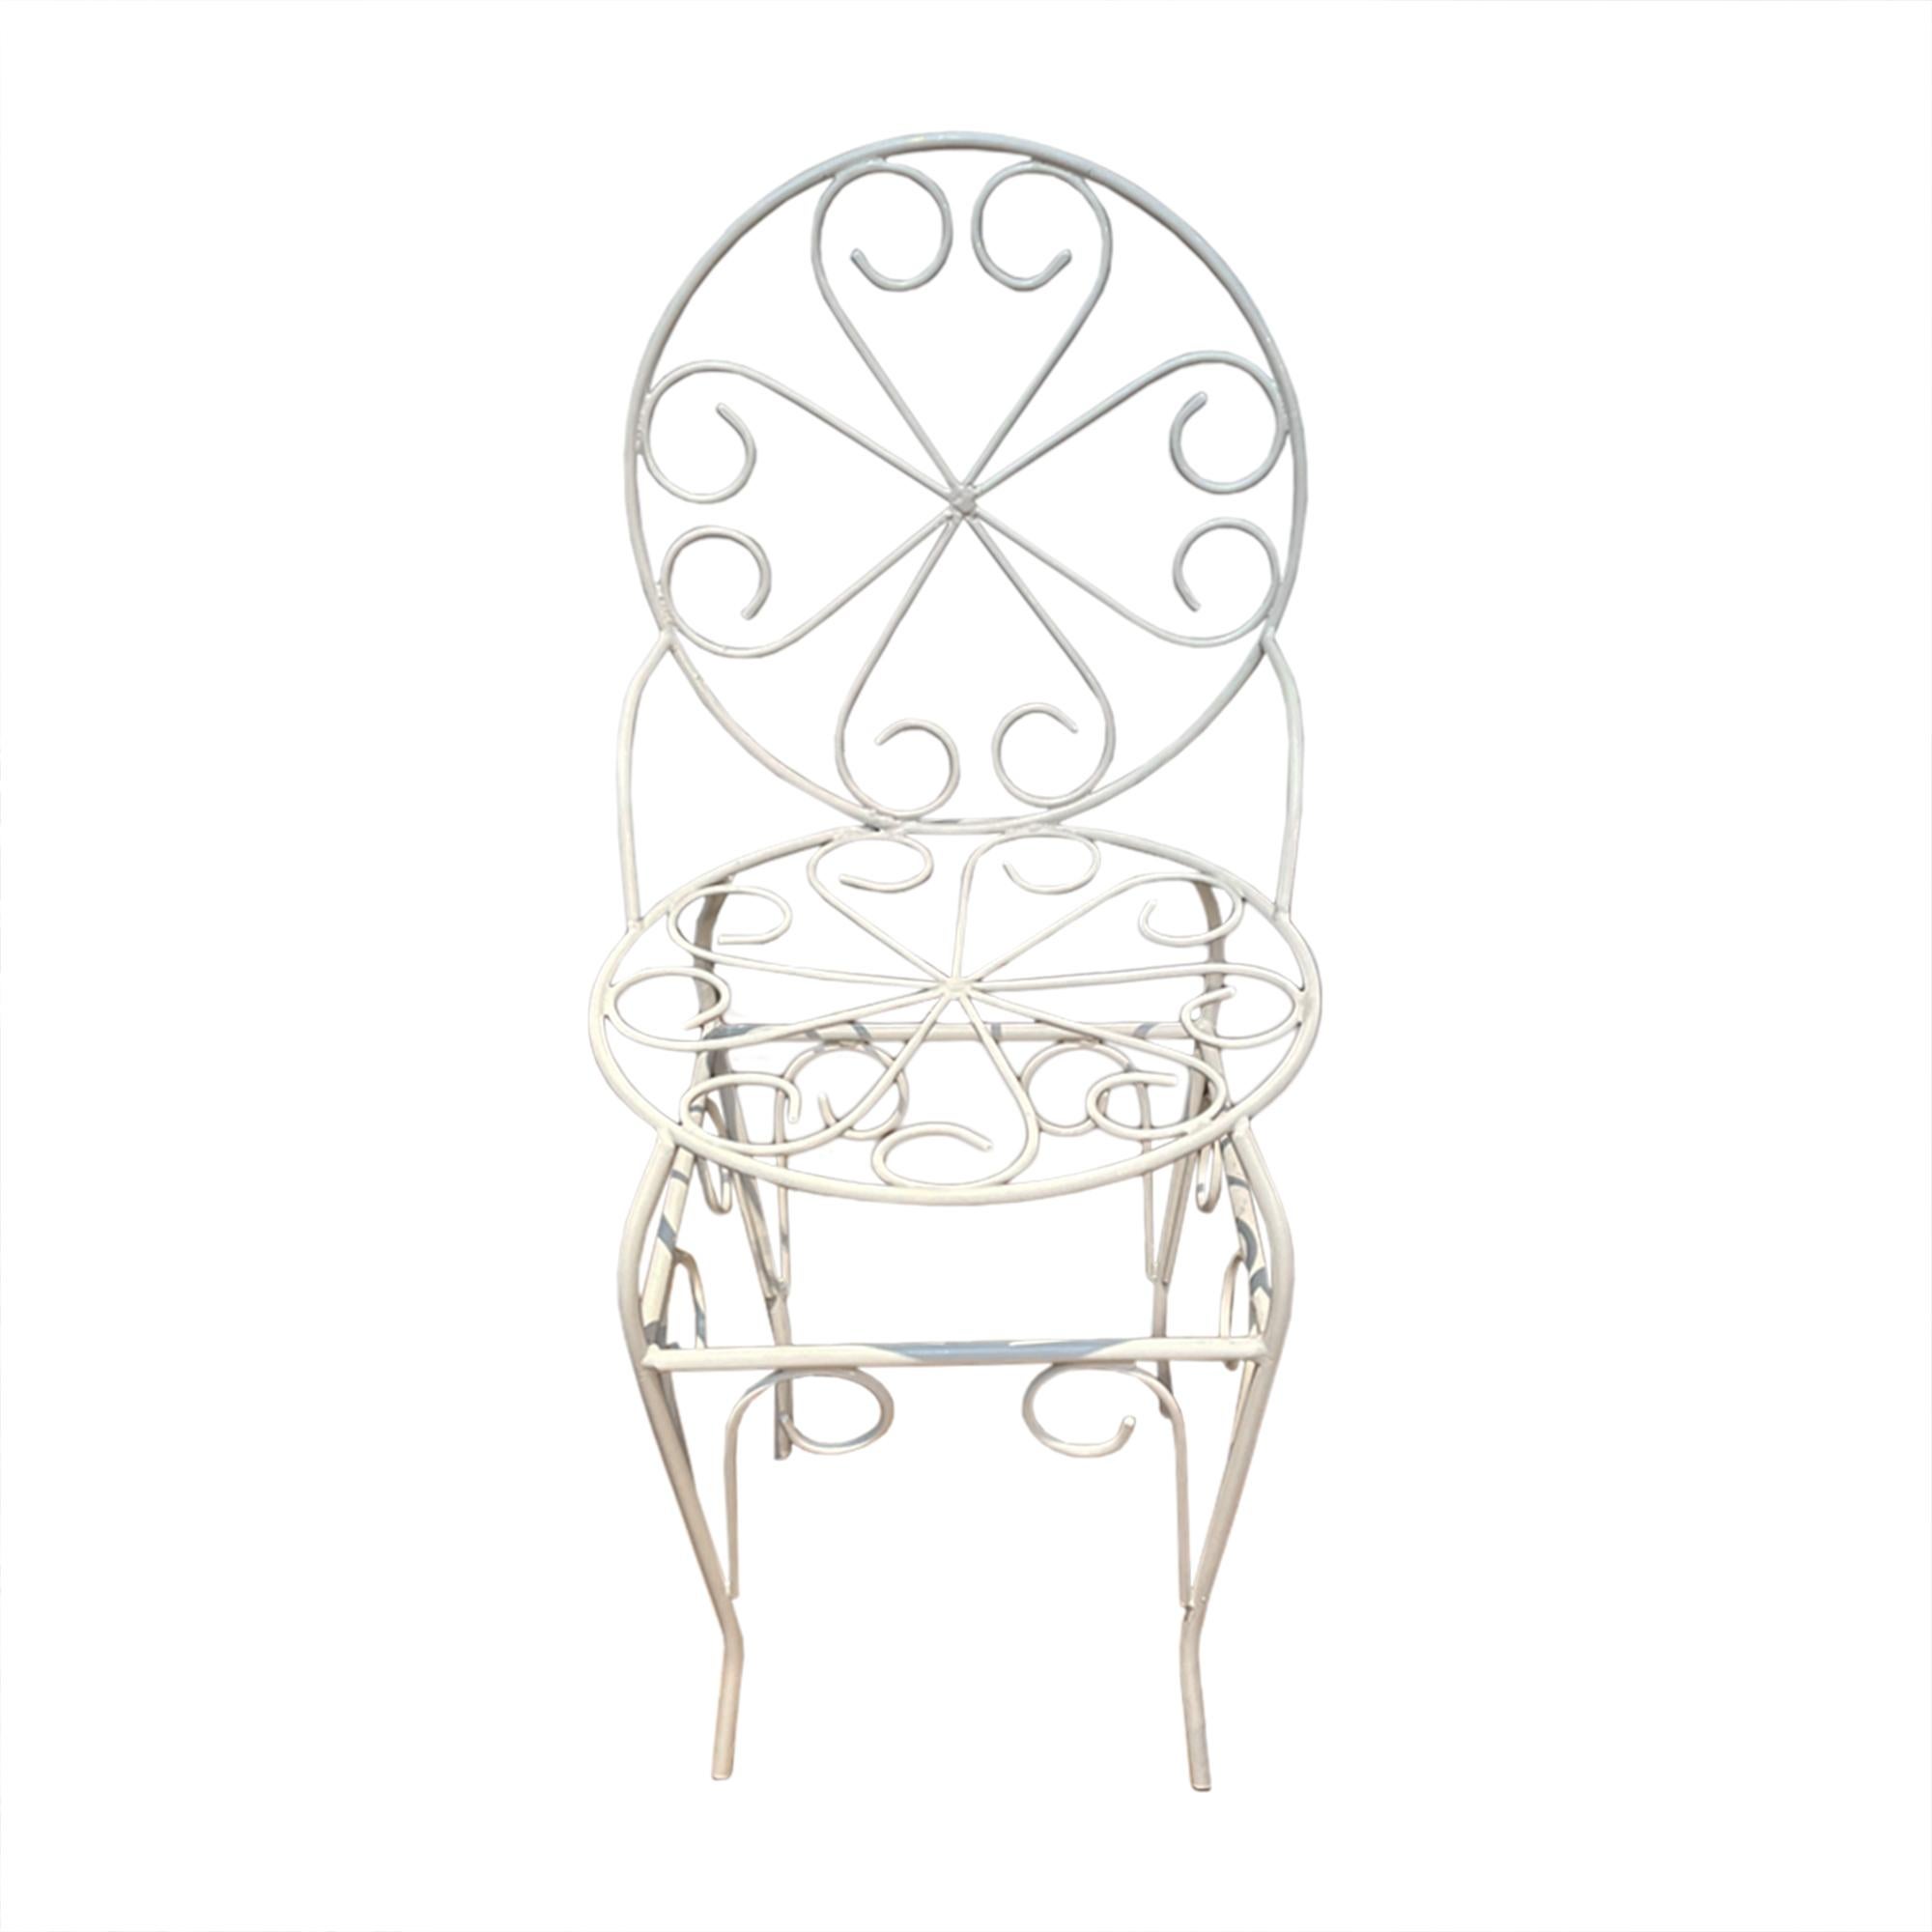 Diese sehr attraktiven Gartenstühle wurden in den 1950er Jahren in Frankreich hergestellt.

Gefertigt aus Schmiedeeisen mit einem schönen wirbelnden Muster. Wir haben alle Stühle vollständig restaurieren lassen - jeder einzelne wurde